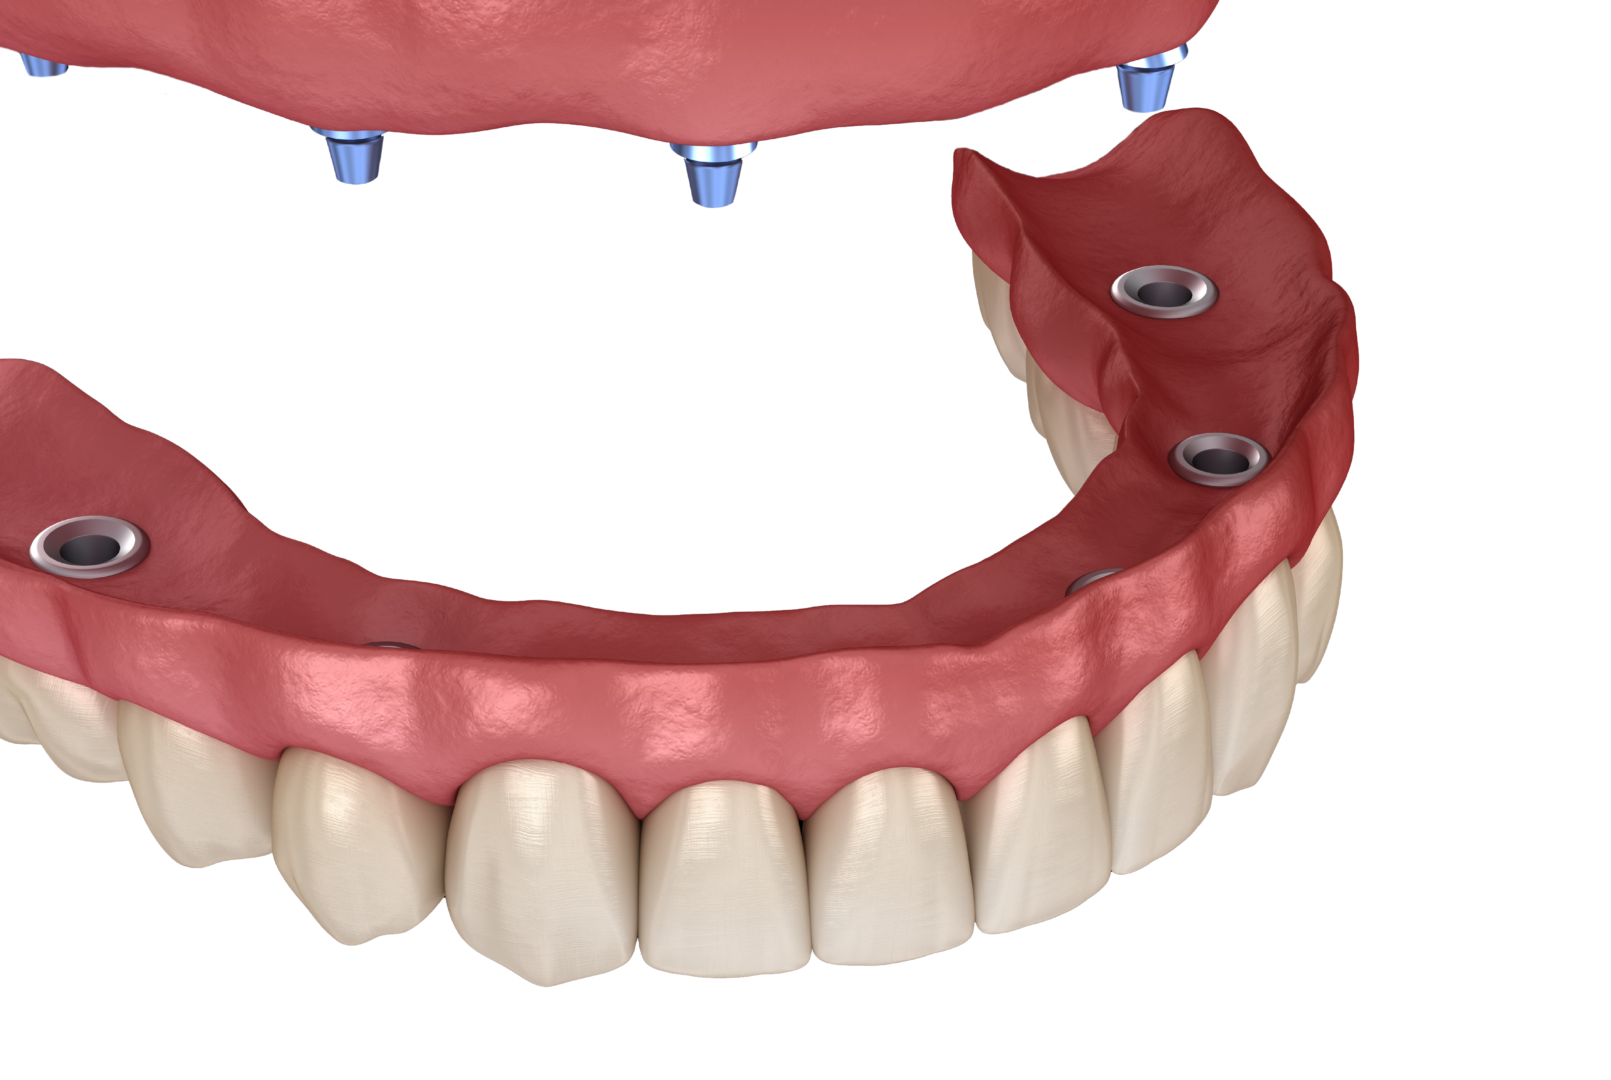 All-on-4 dental implants mockup